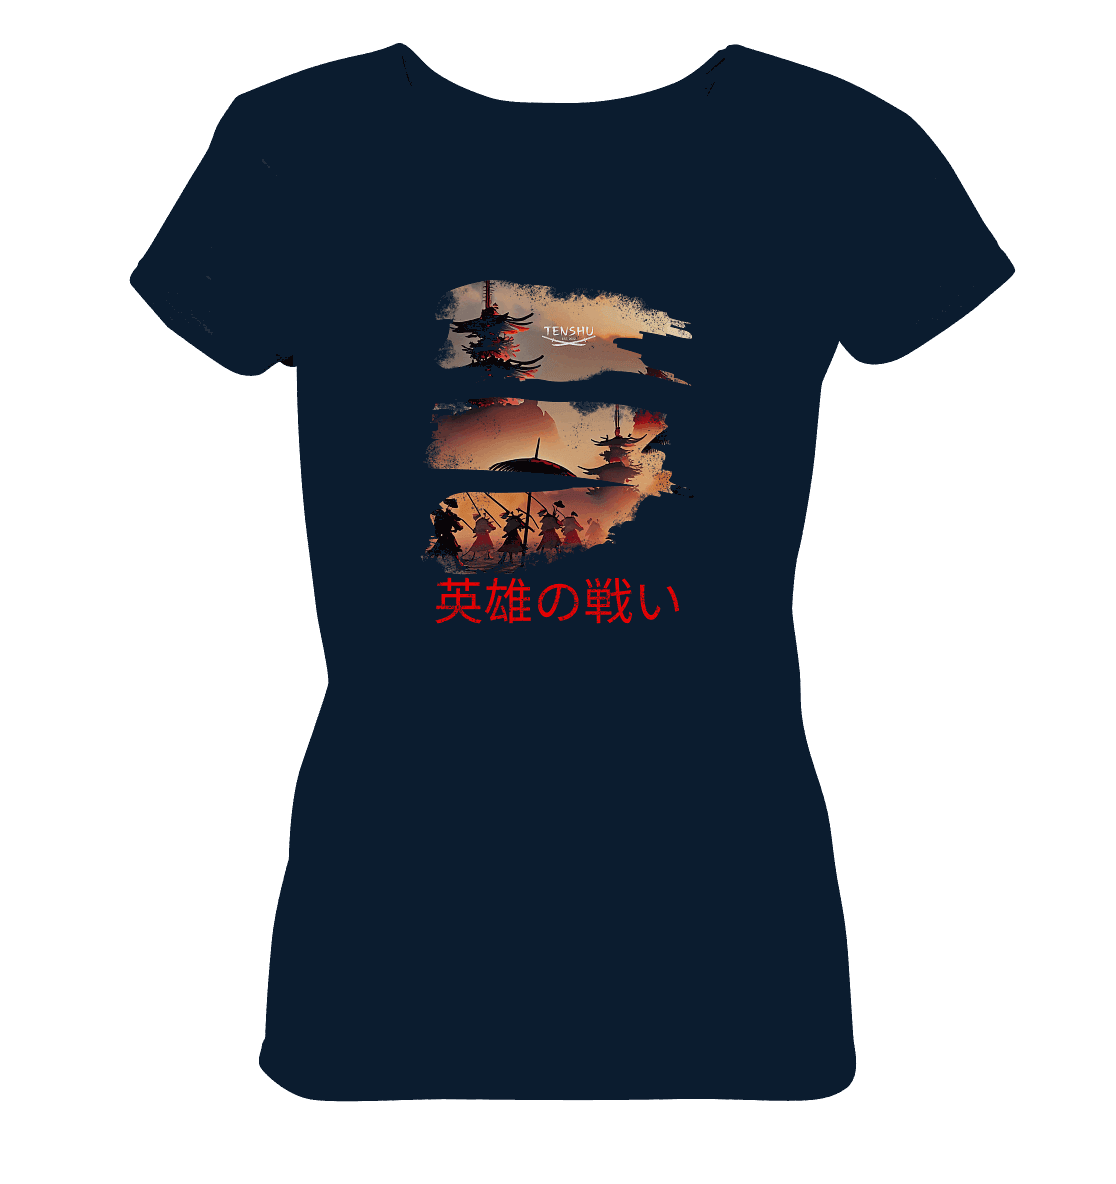 Tenshu / Schlacht der Helden - Ladies Organic Shirt